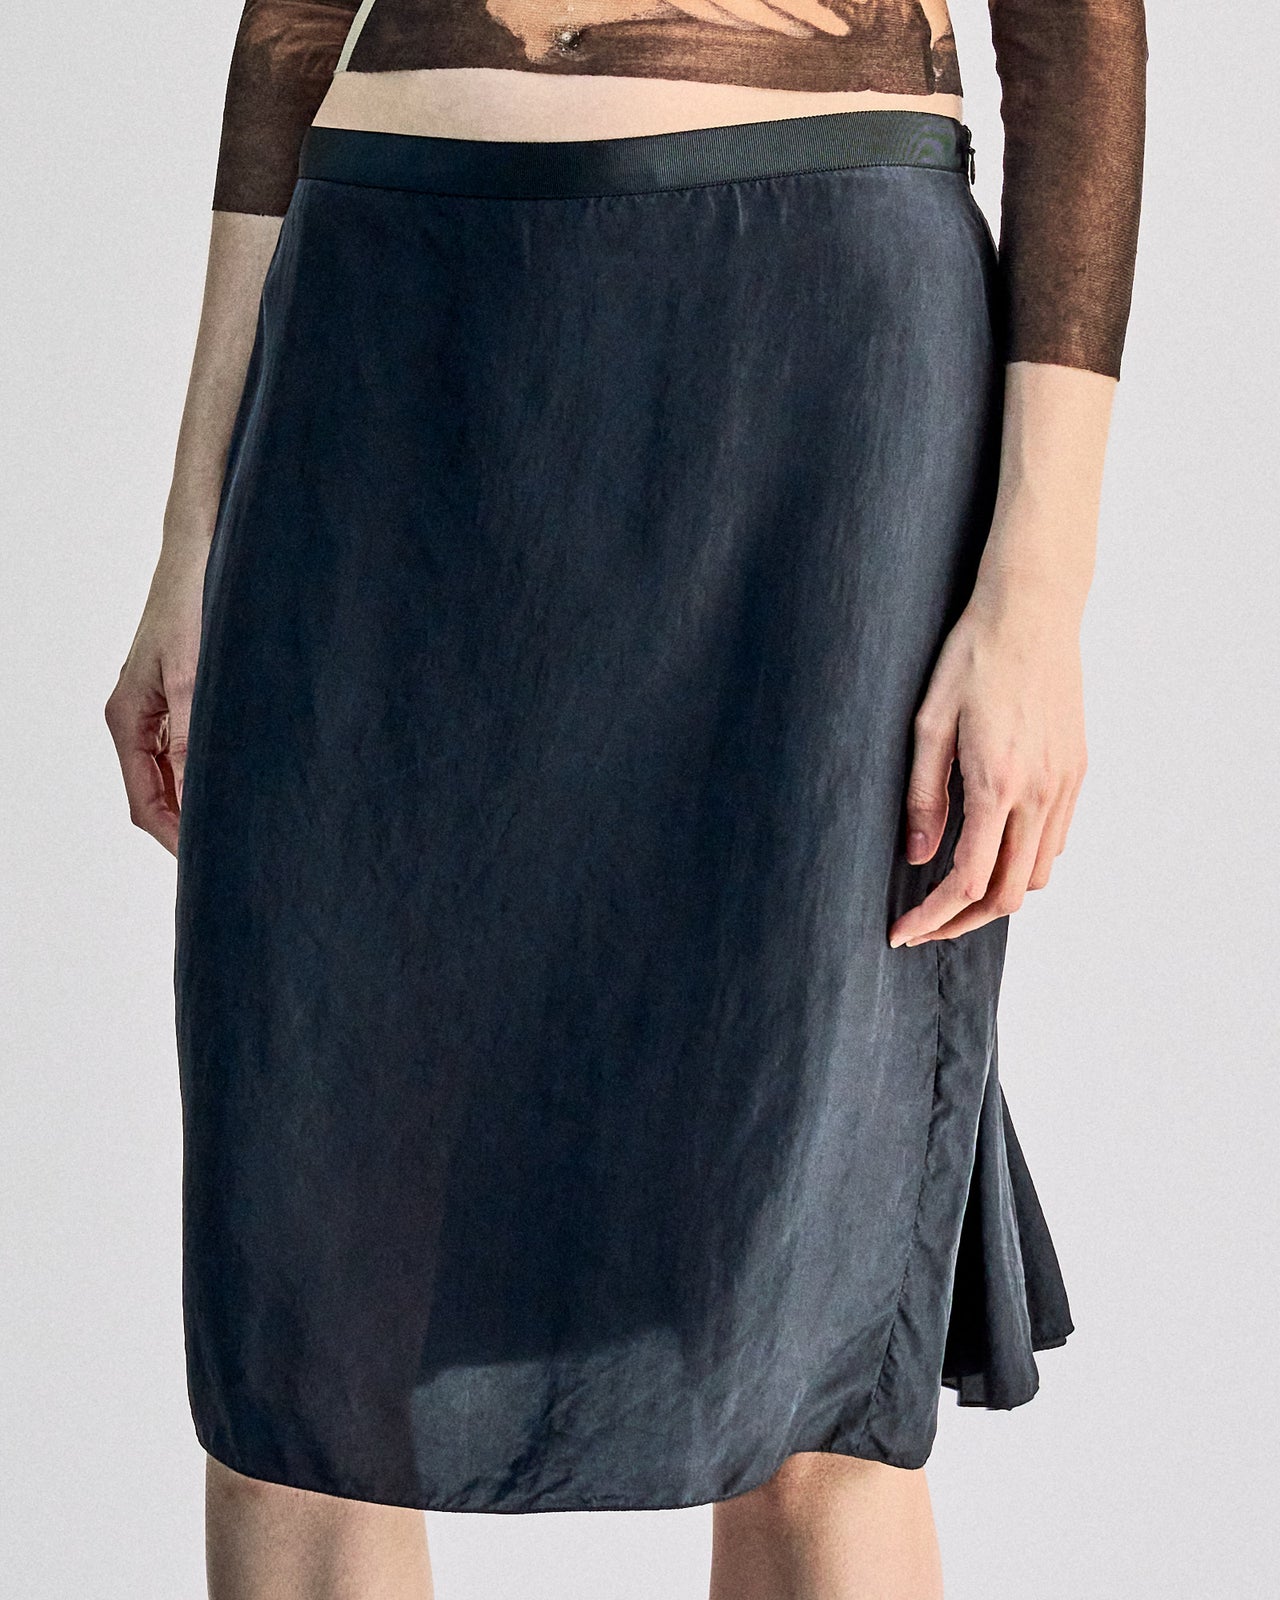 Lanvin 2007 Alber Elbaz Silk skirt